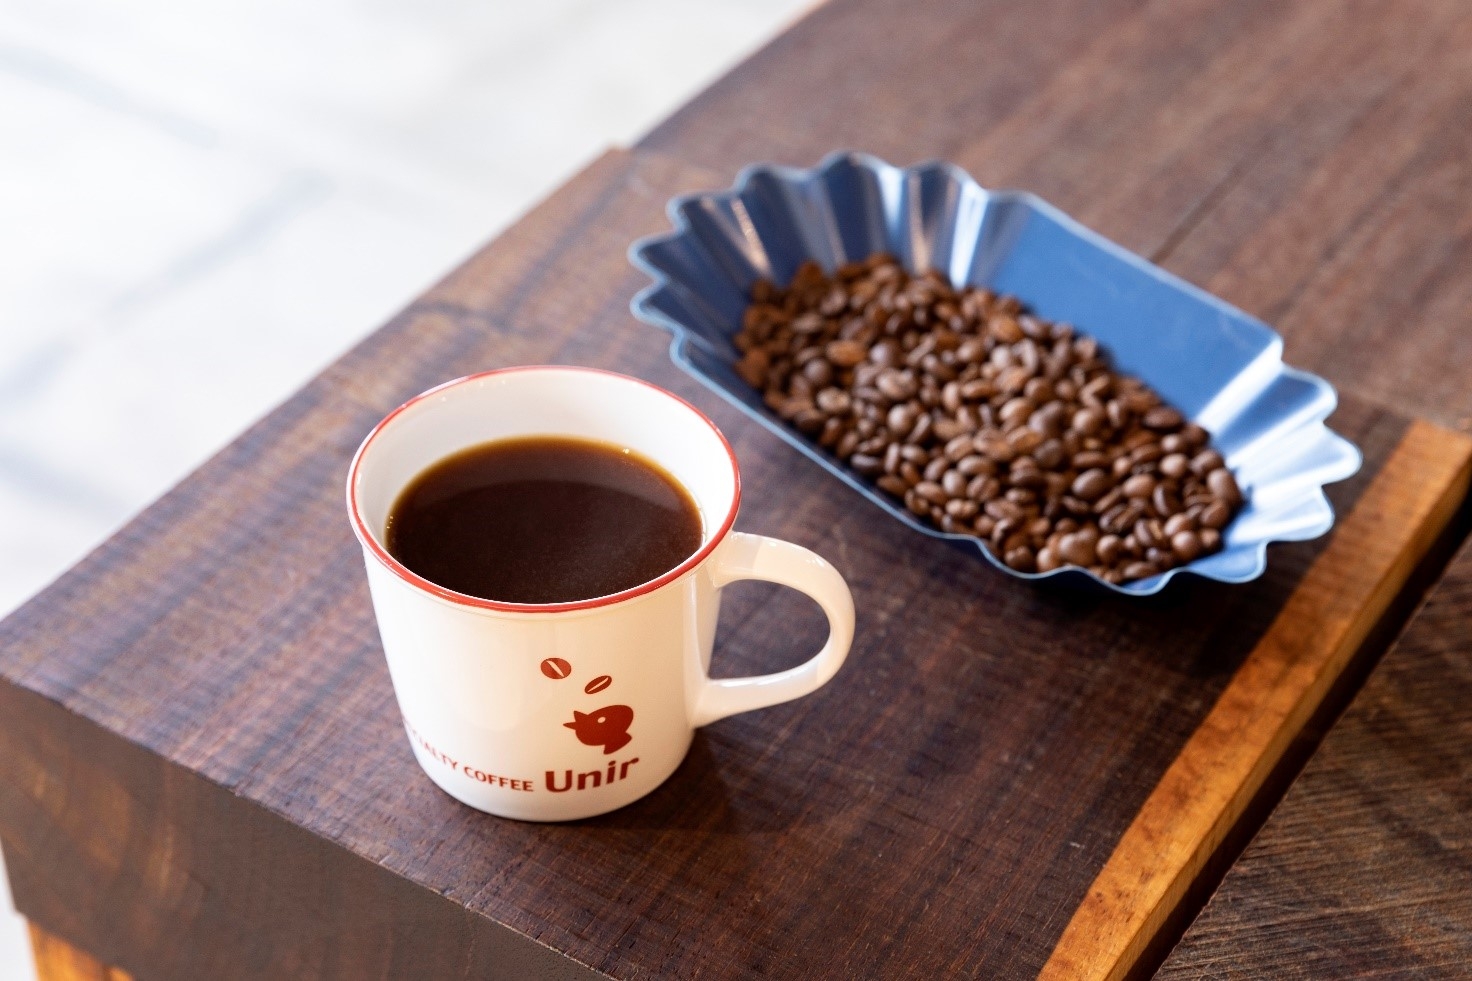 産地買い付けのスペシャルティコーヒーを
長岡京から「from seed to cup（豆からカップまで）」を提供